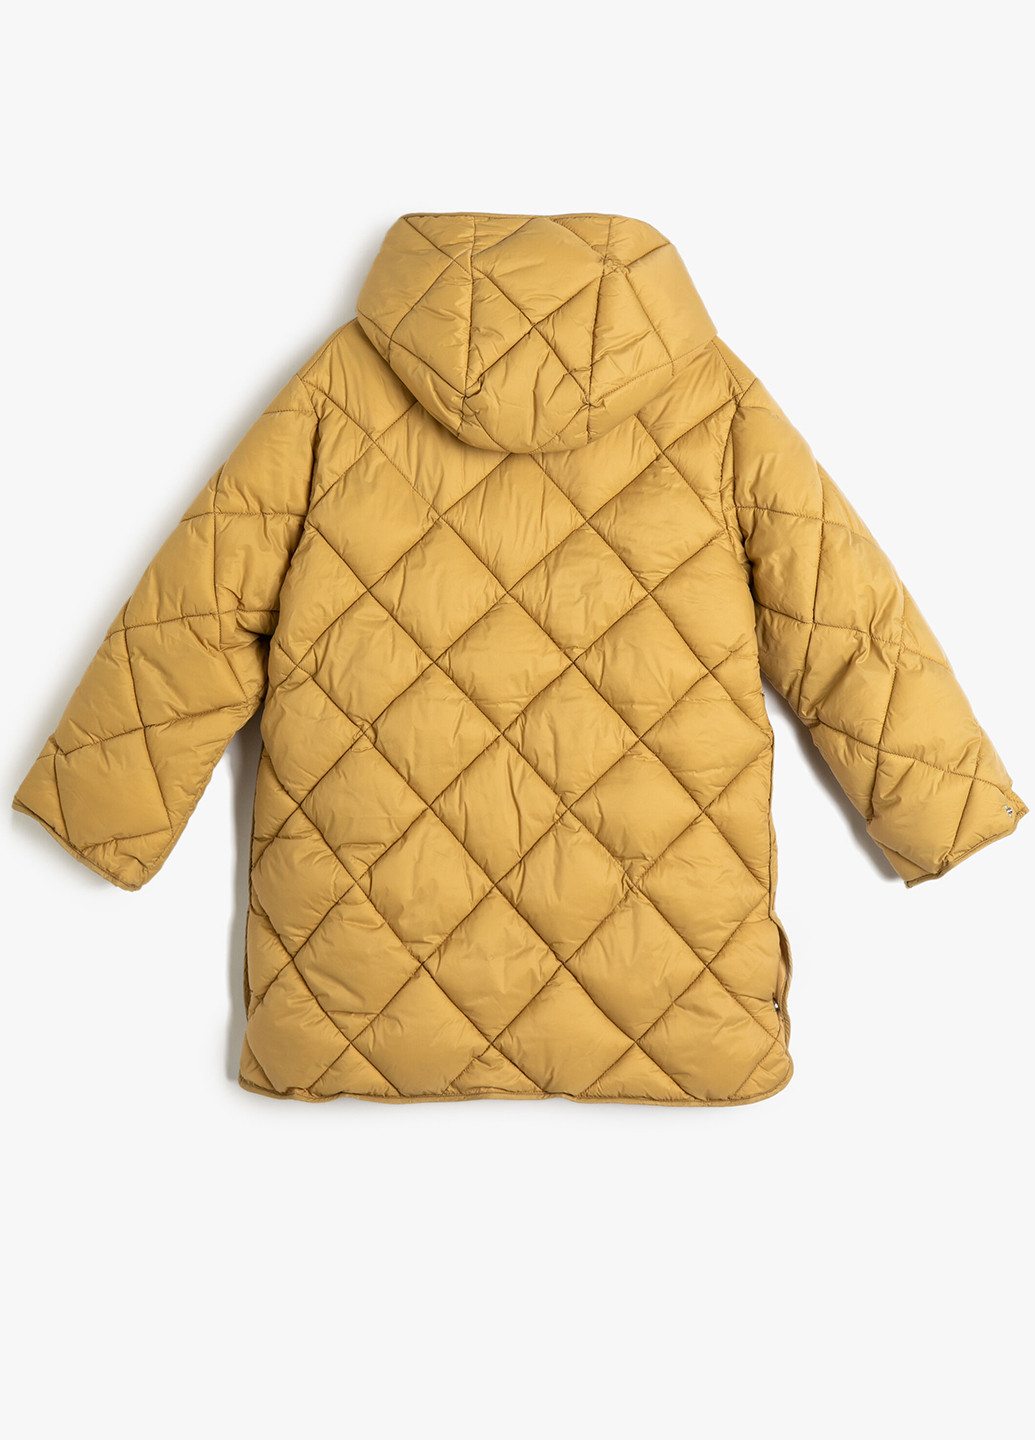 Горчичная демисезонная куртка куртка-пальто KOTON